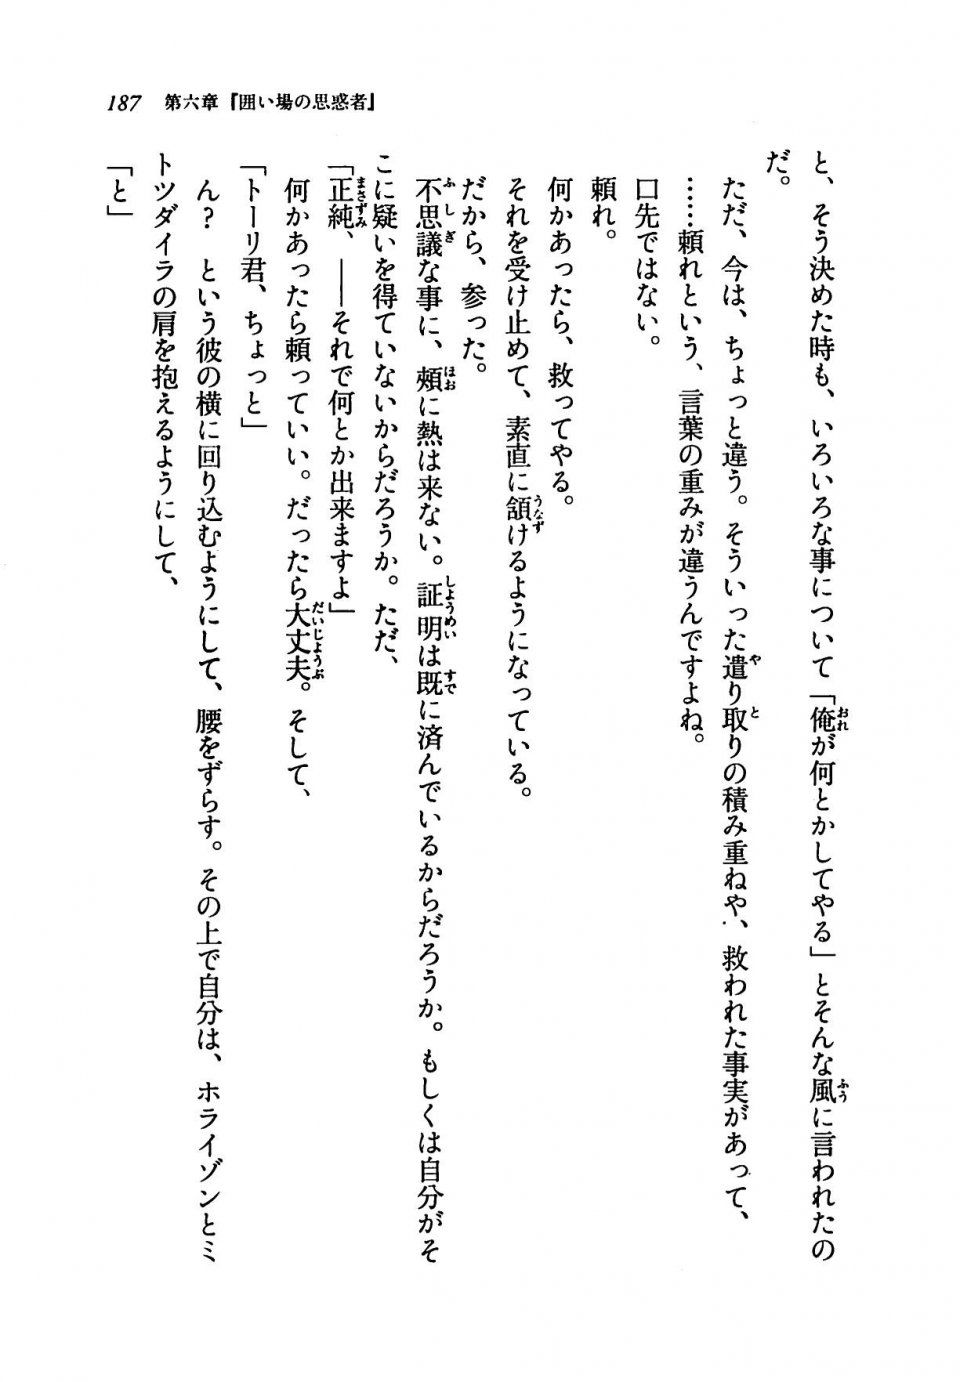 Kyoukai Senjou no Horizon LN Vol 19(8A) - Photo #187